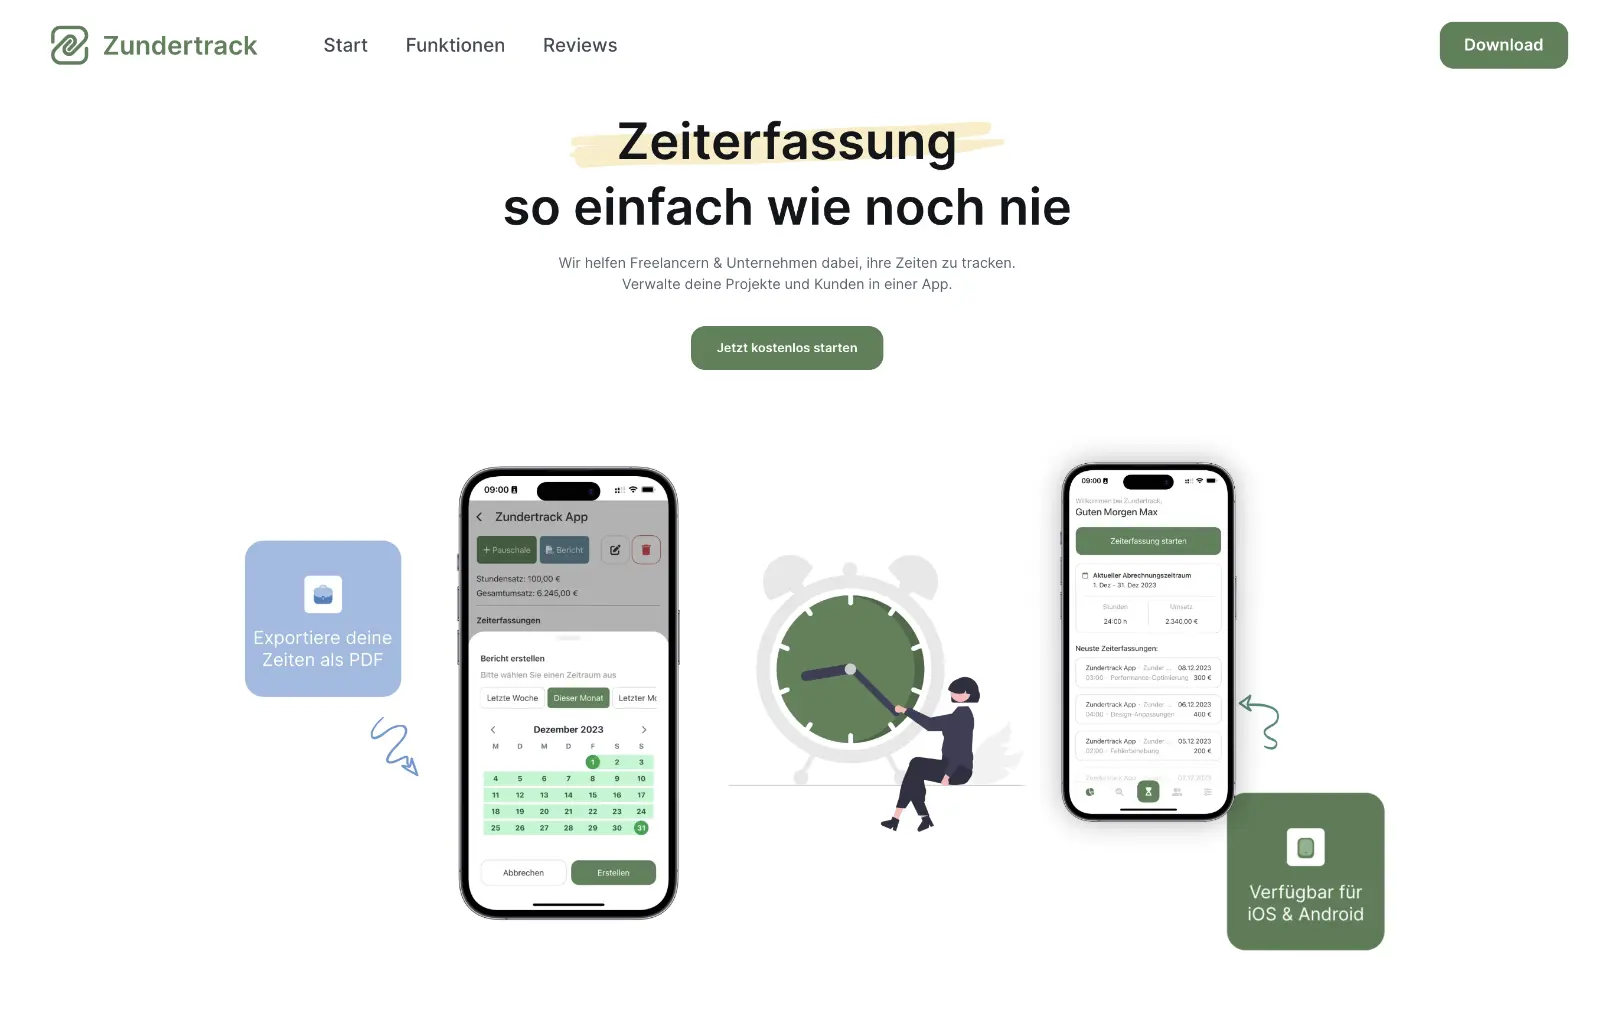 Zundertrack - Die App zur Zeiterfassung für Freelancer & Unternehmen.